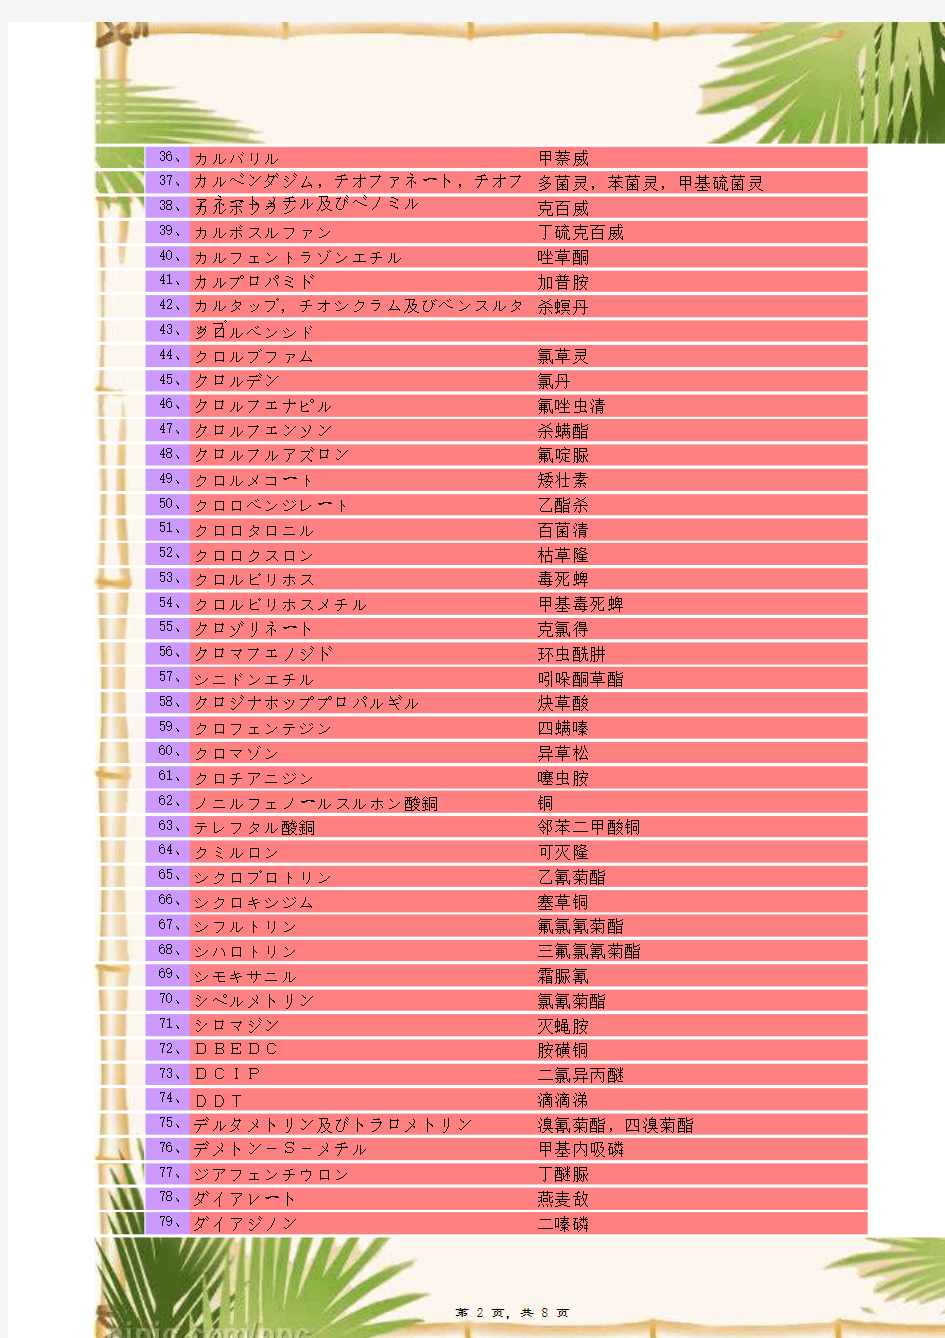 日本肯定列表制度茶叶农残限量表(中英日对照)--(新带真人朗读学习日文功能)